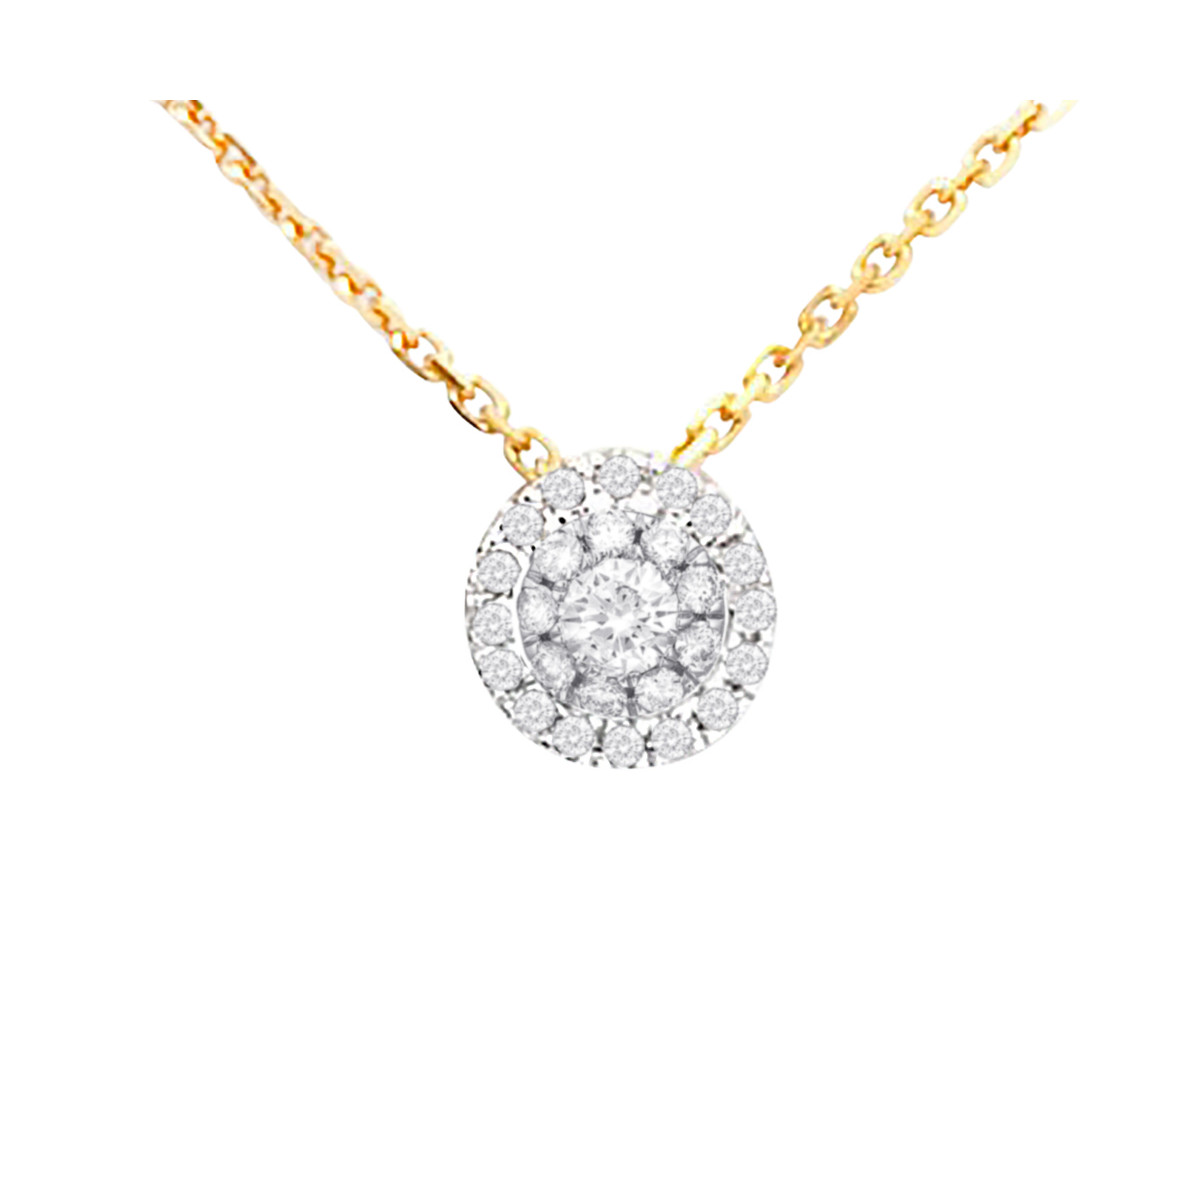 Pendentif Or Jaune et Diamants 0,12 carats "Mon Brillant" + chaîne argent offerte